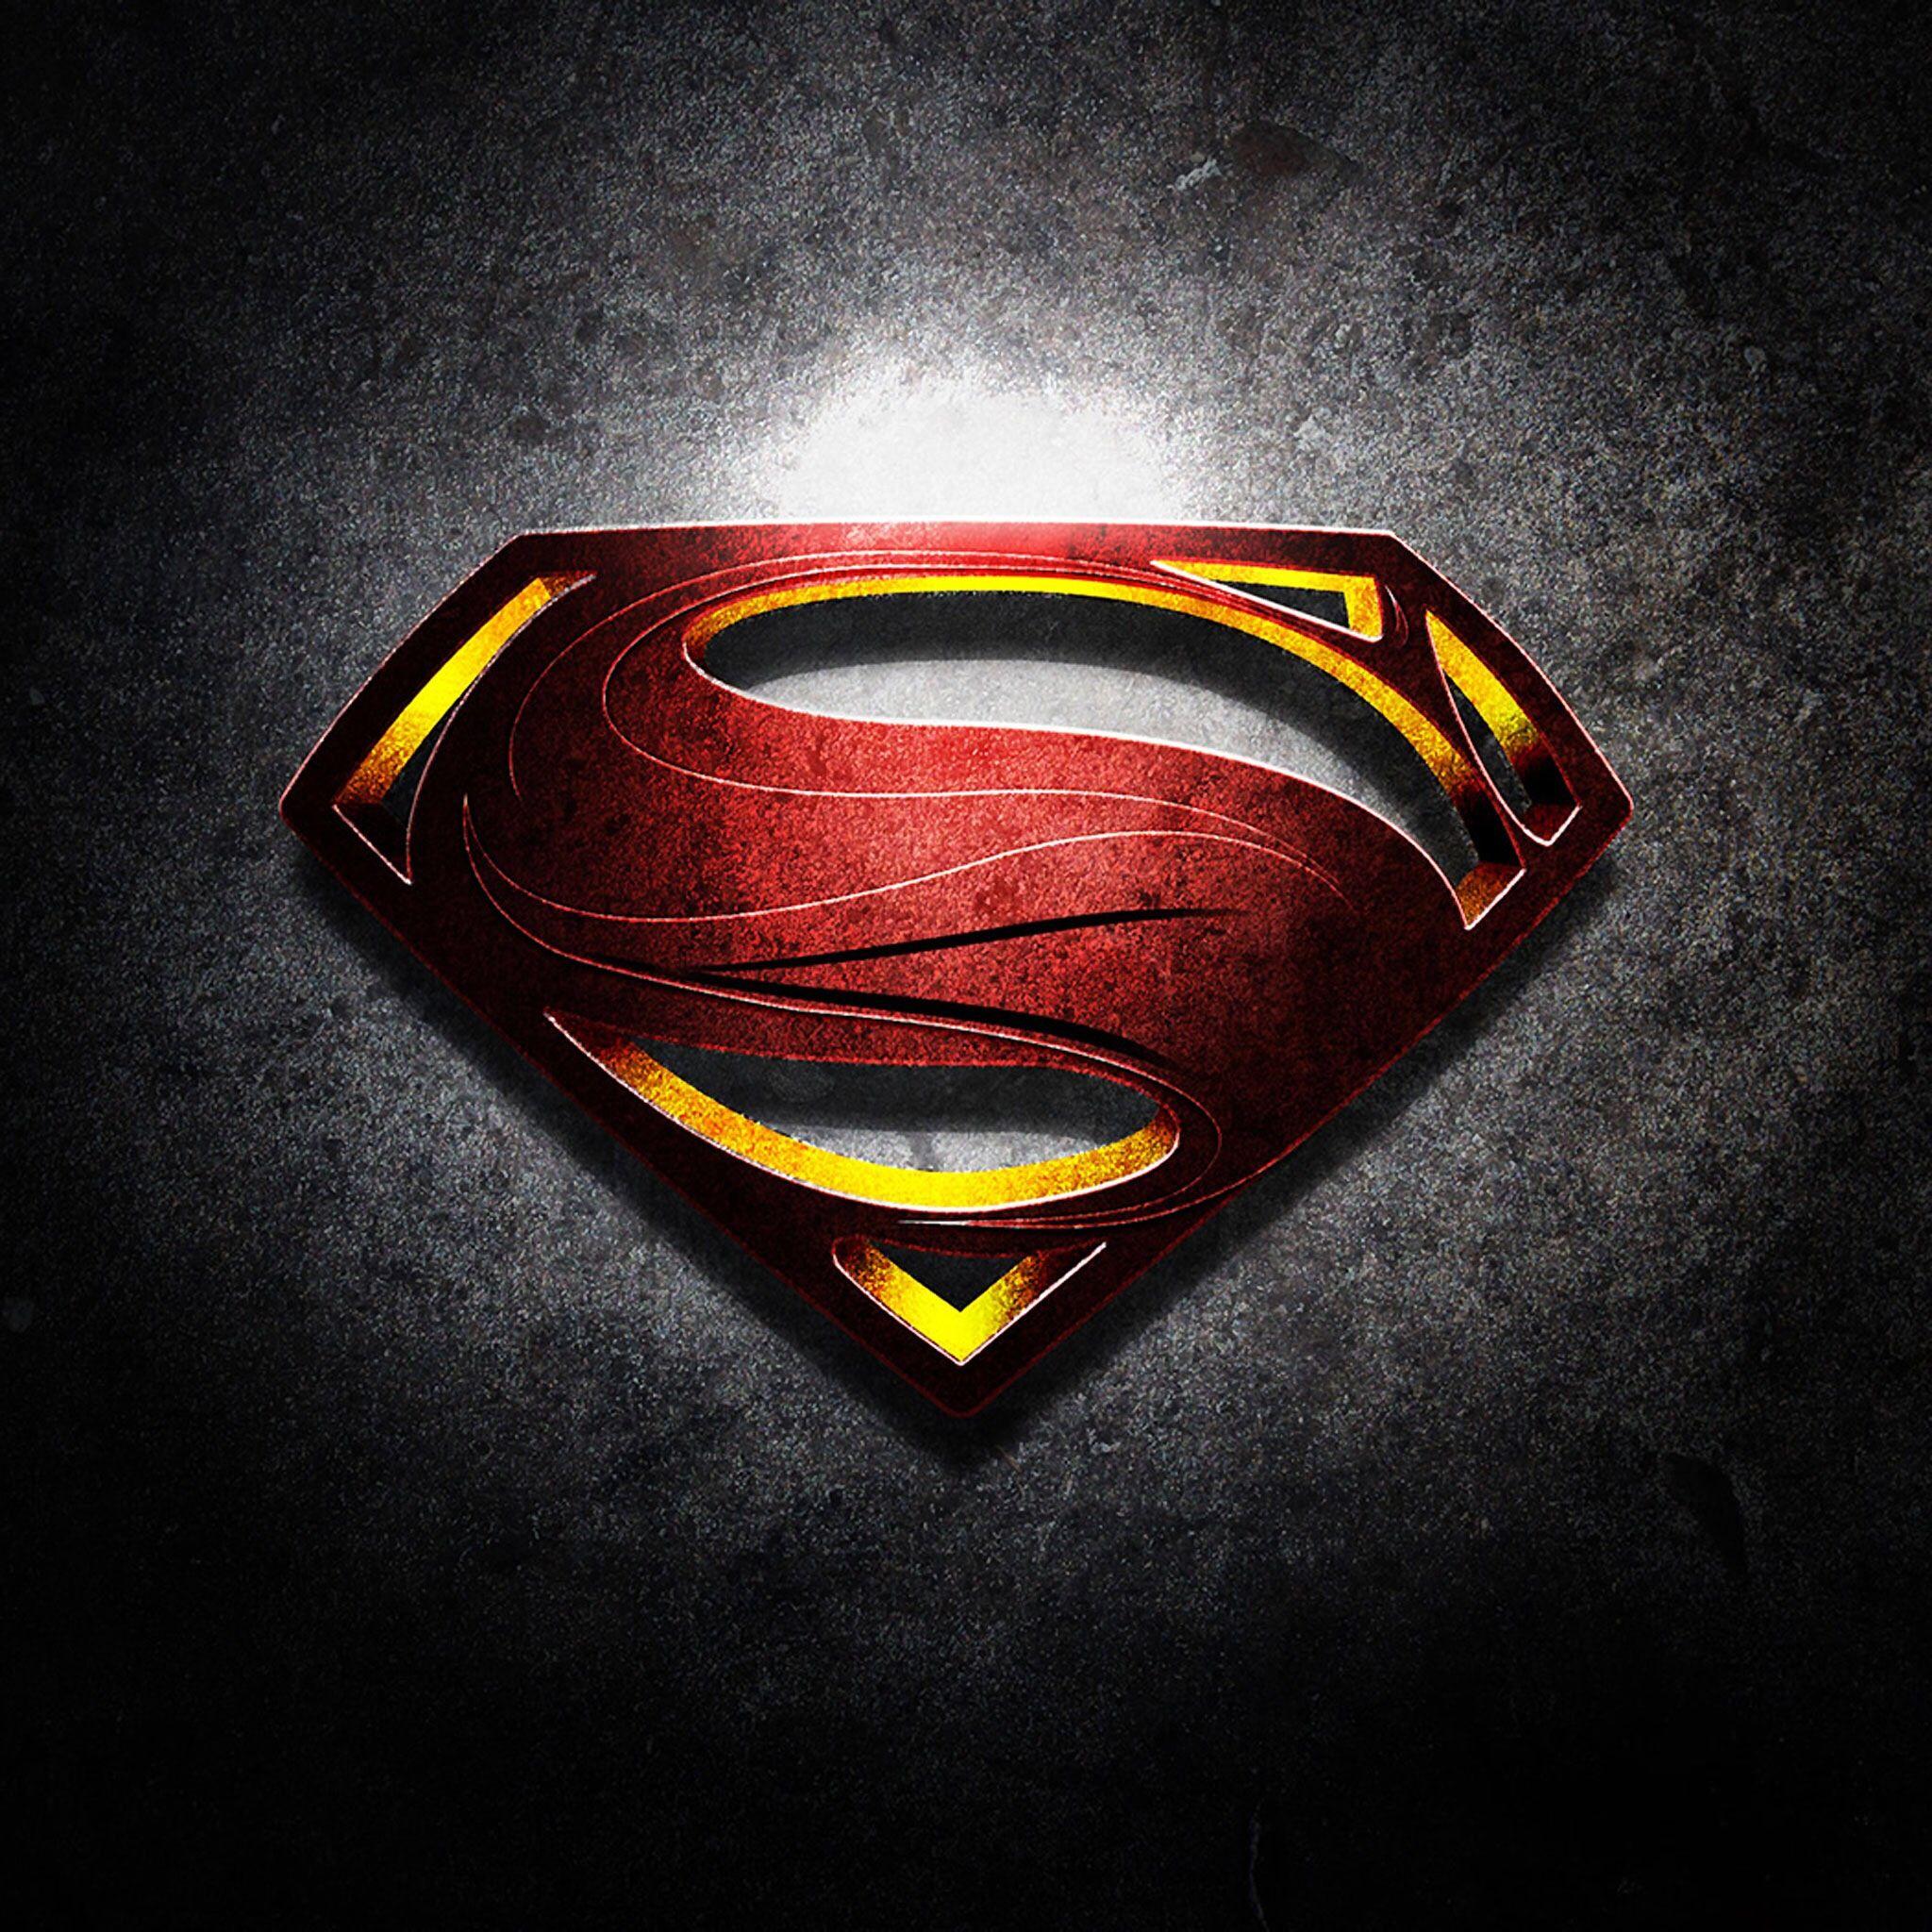 photo superman logo 3D free download HD Wallpaper Free